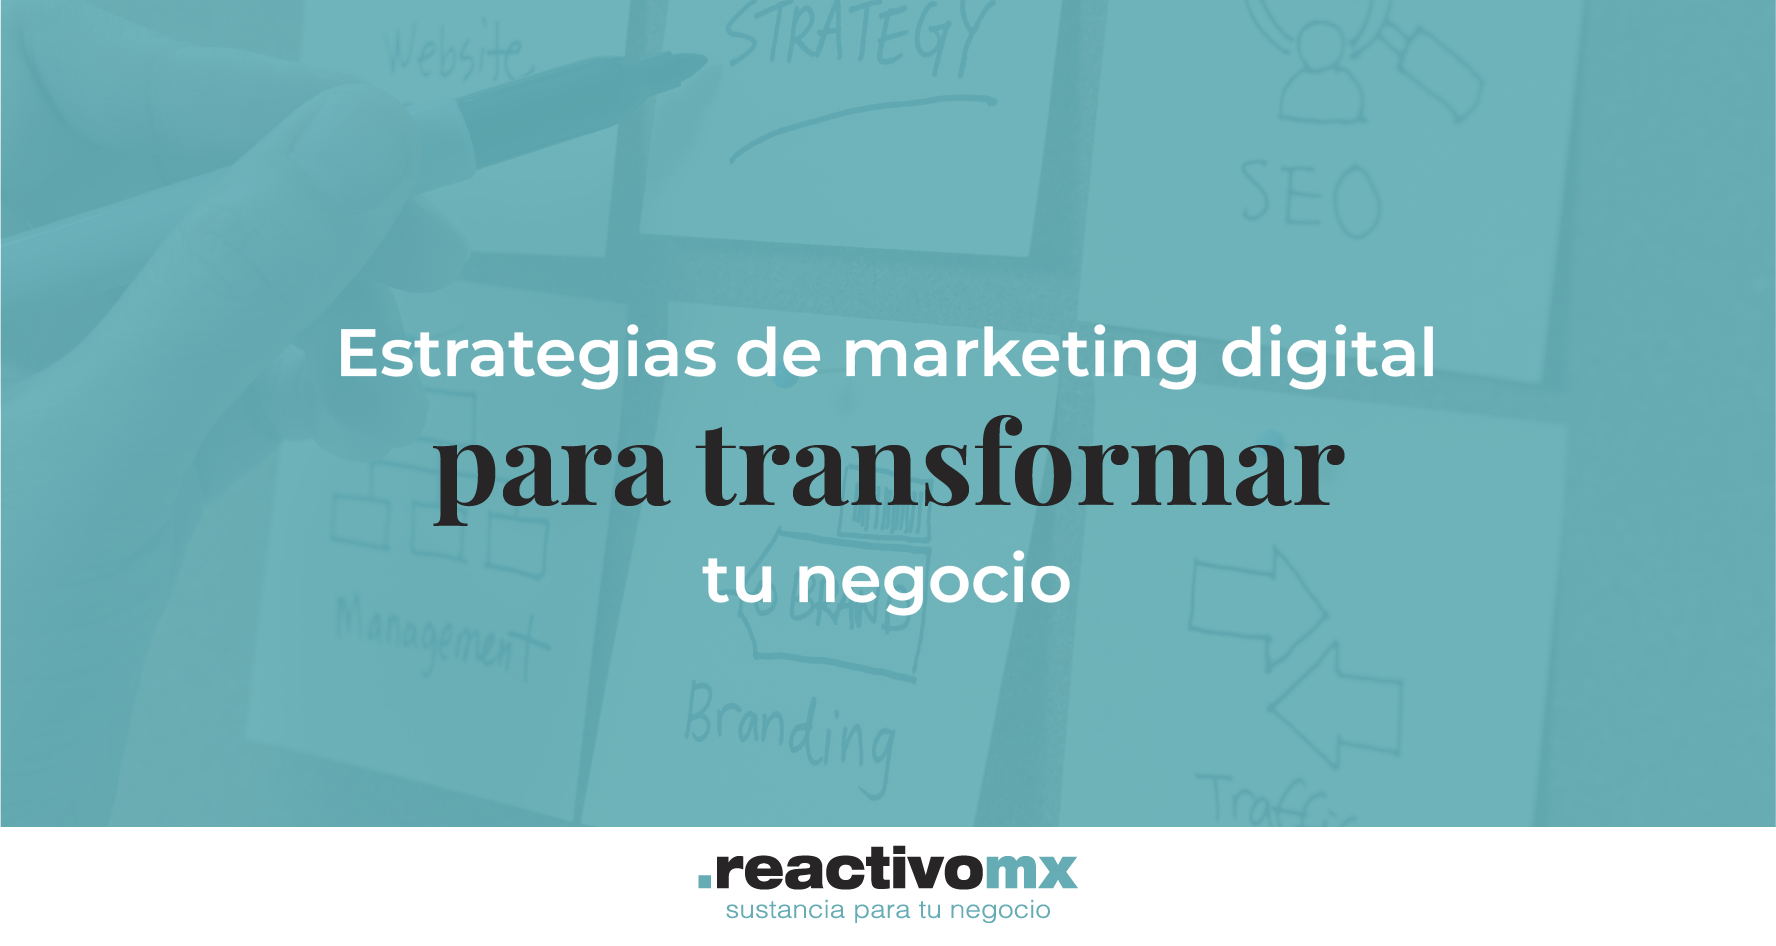 Estrategias de marketing digital para transformar tu negocio